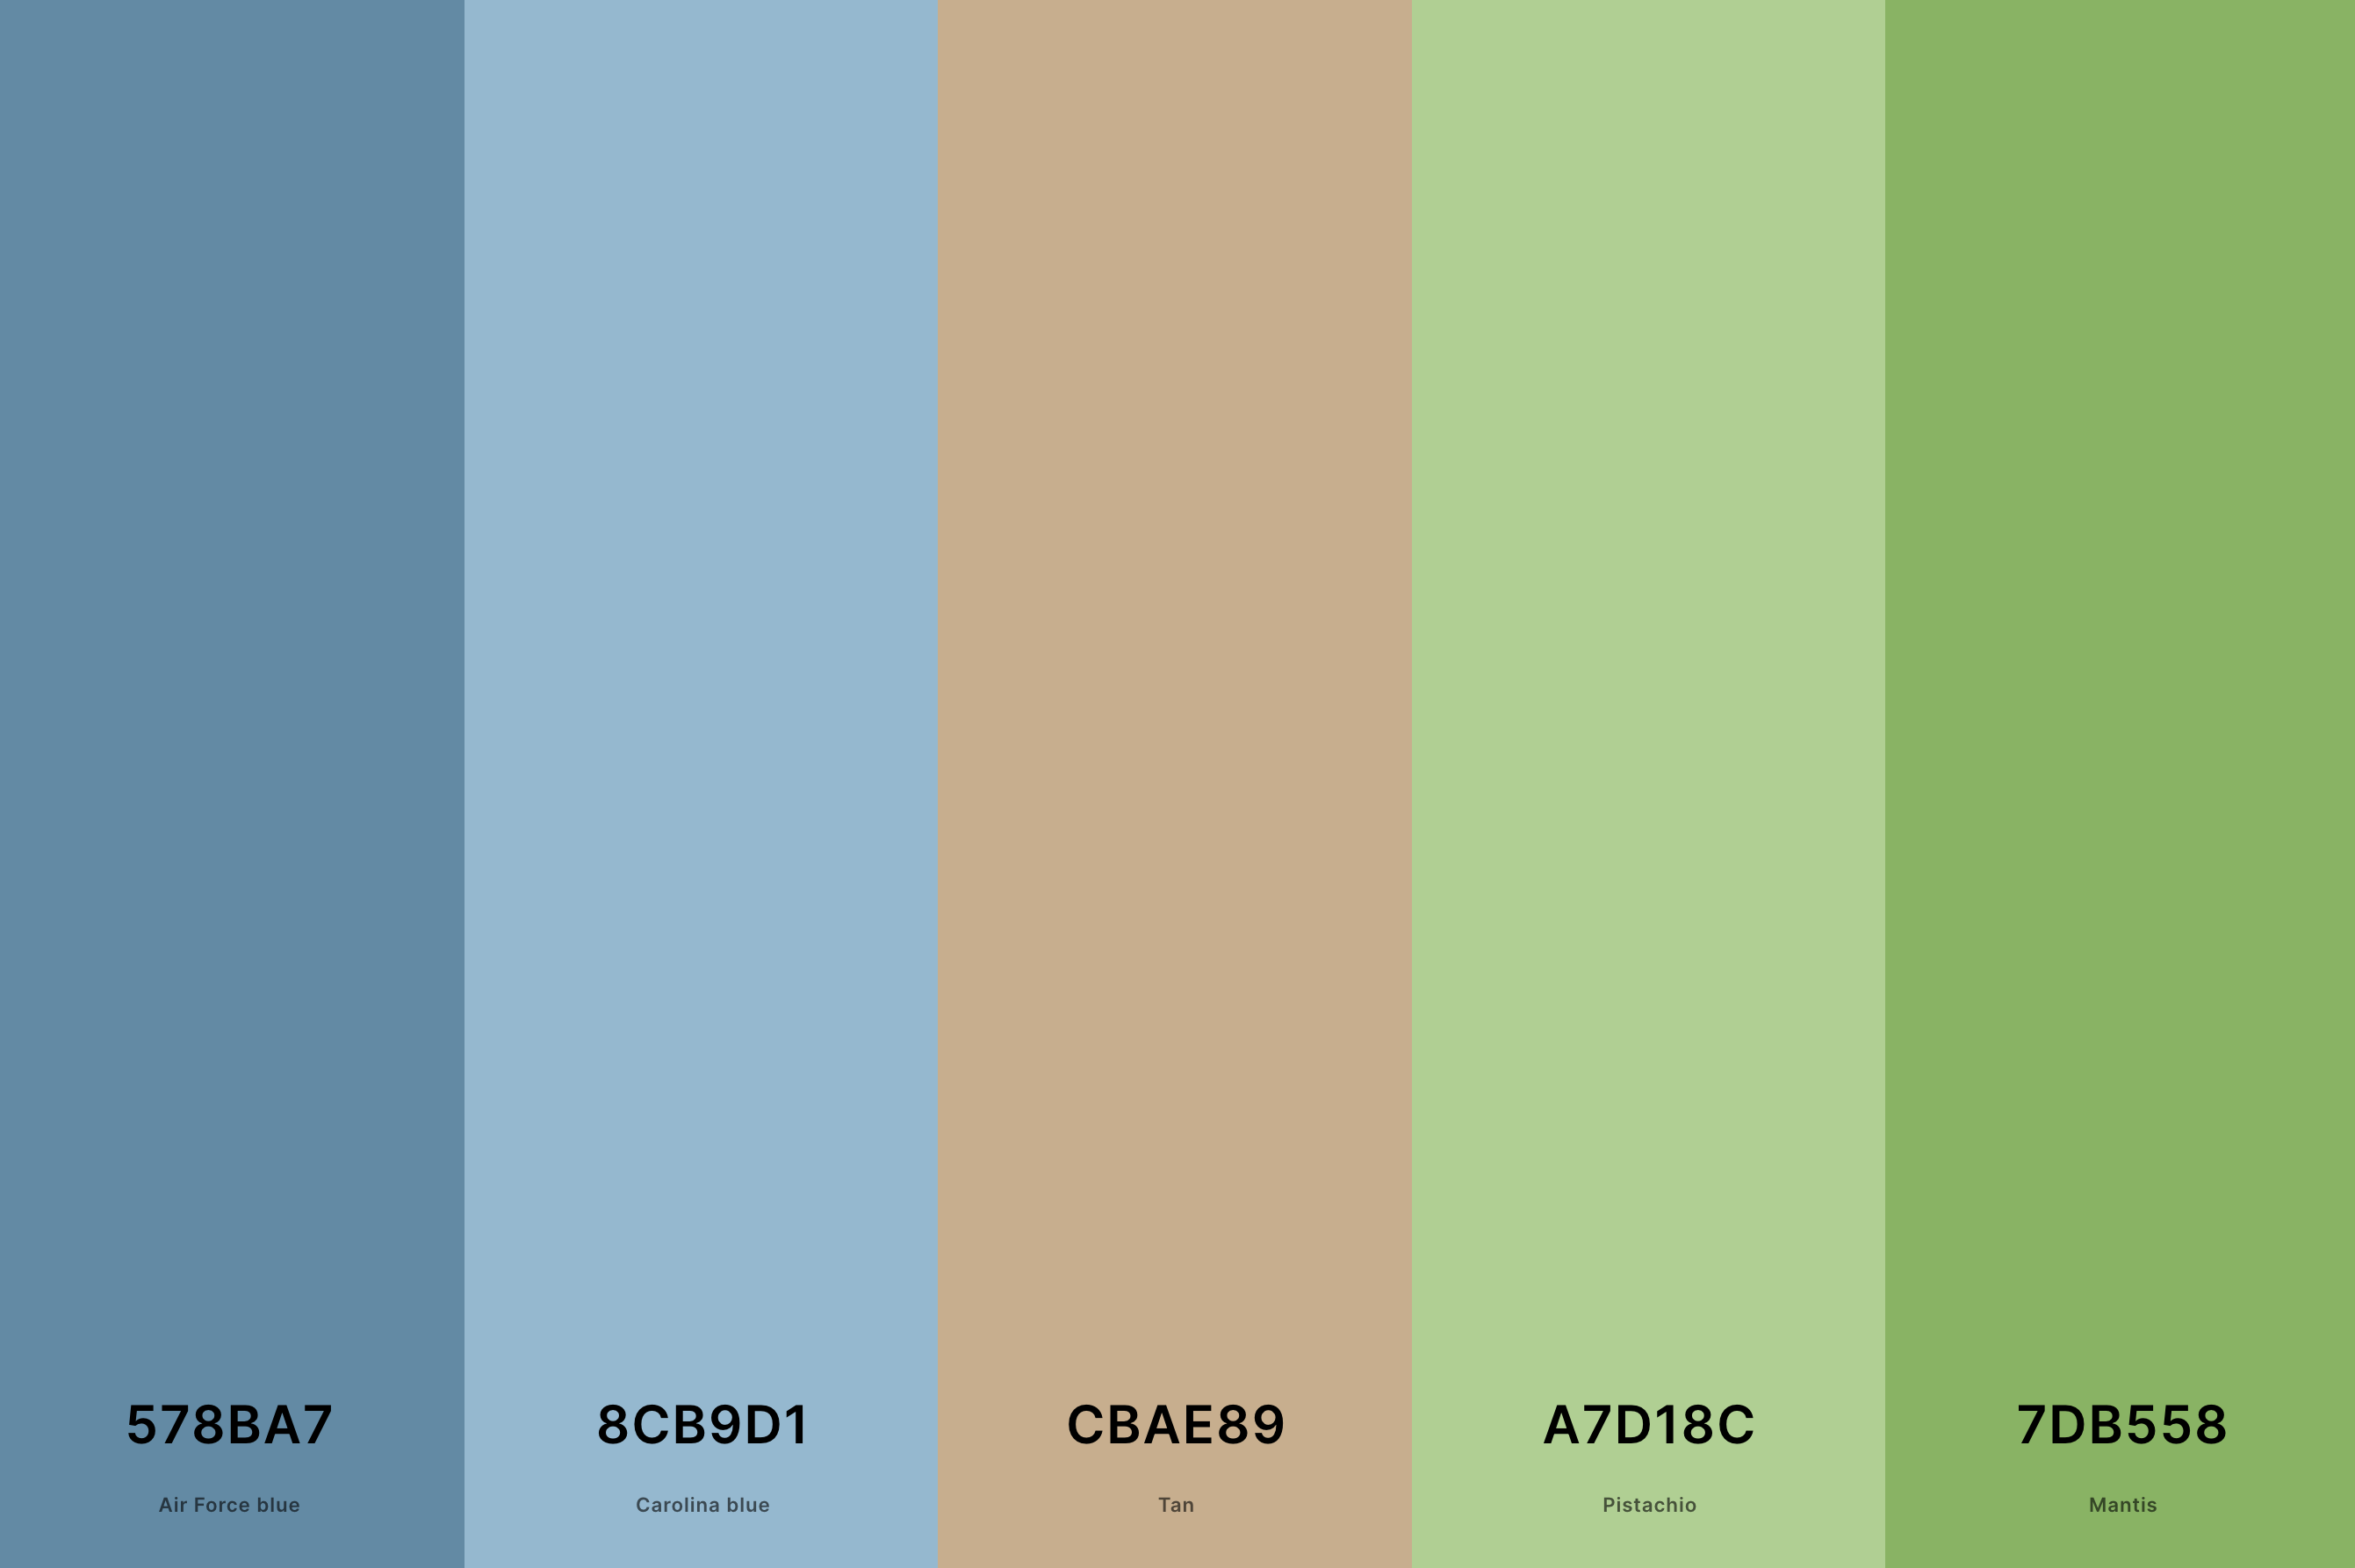 6. Blue, Green And Tan Color Palette Color Palette with Air Force Blue (Hex #578BA7) + Carolina Blue (Hex #8CB9D1) + Tan (Hex #CBAE89) + Pistachio (Hex #A7D18C) + Mantis (Hex #7DB558) Color Palette with Hex Codes